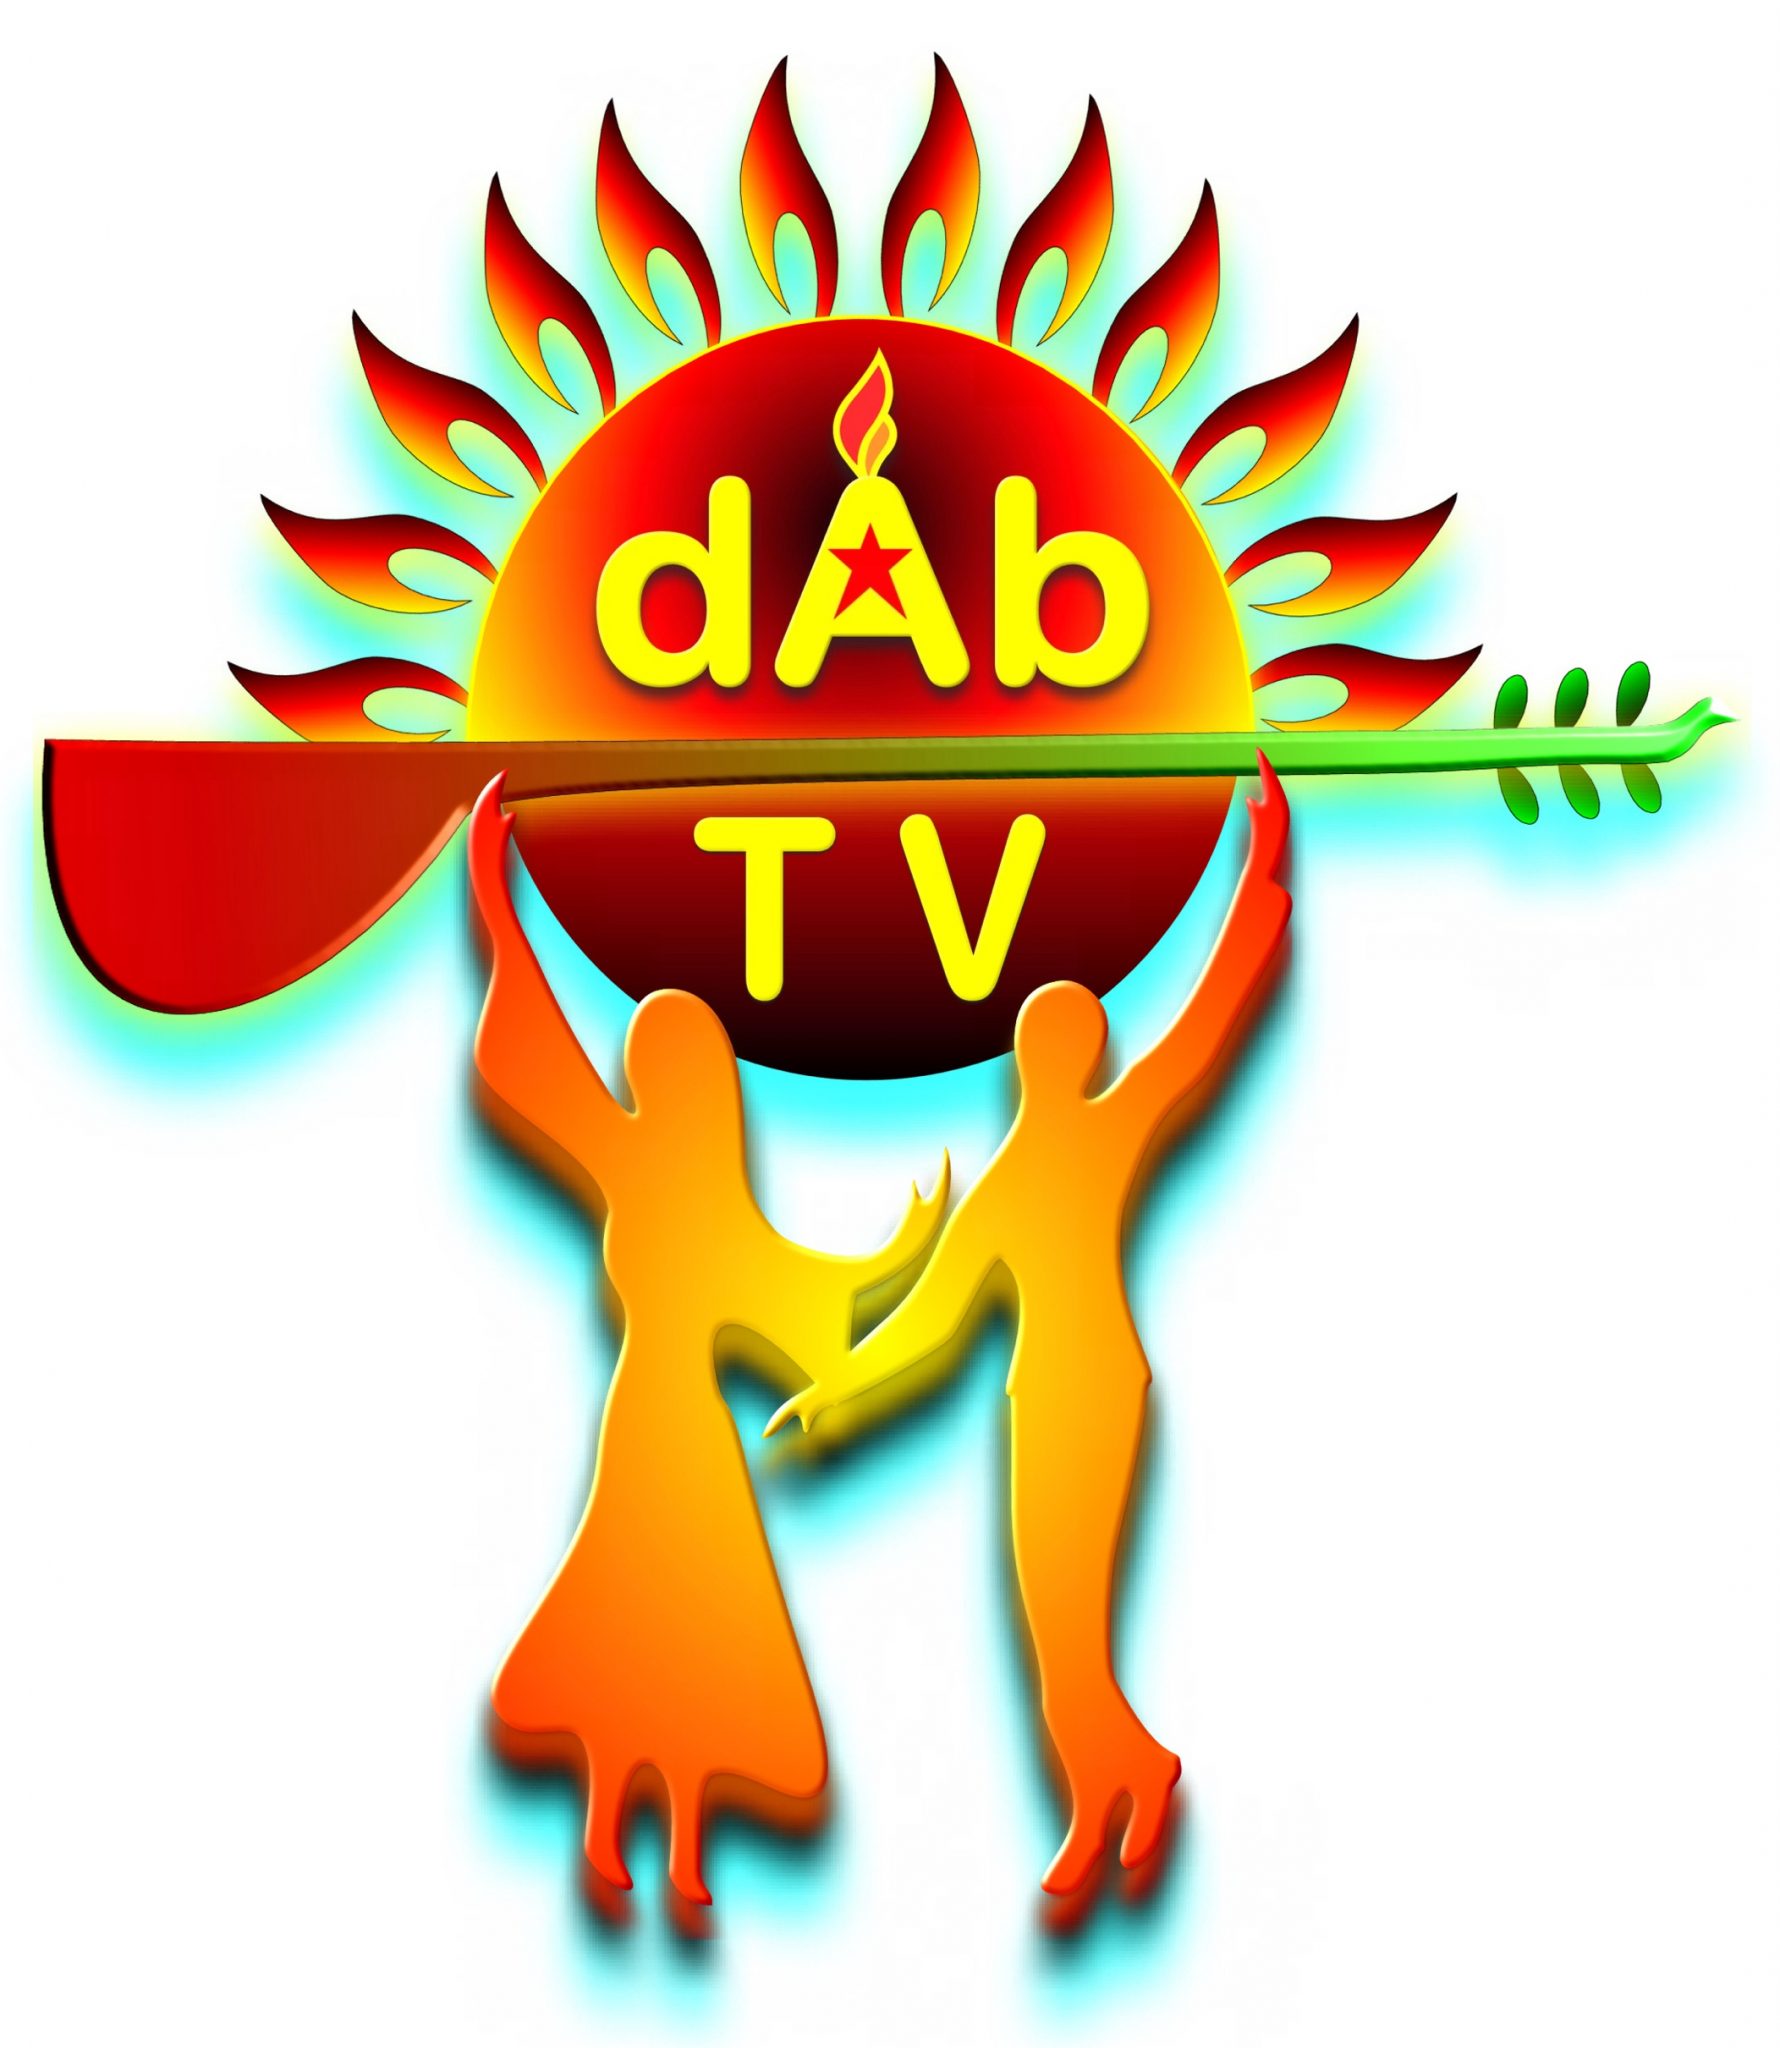 DAB Tv logo